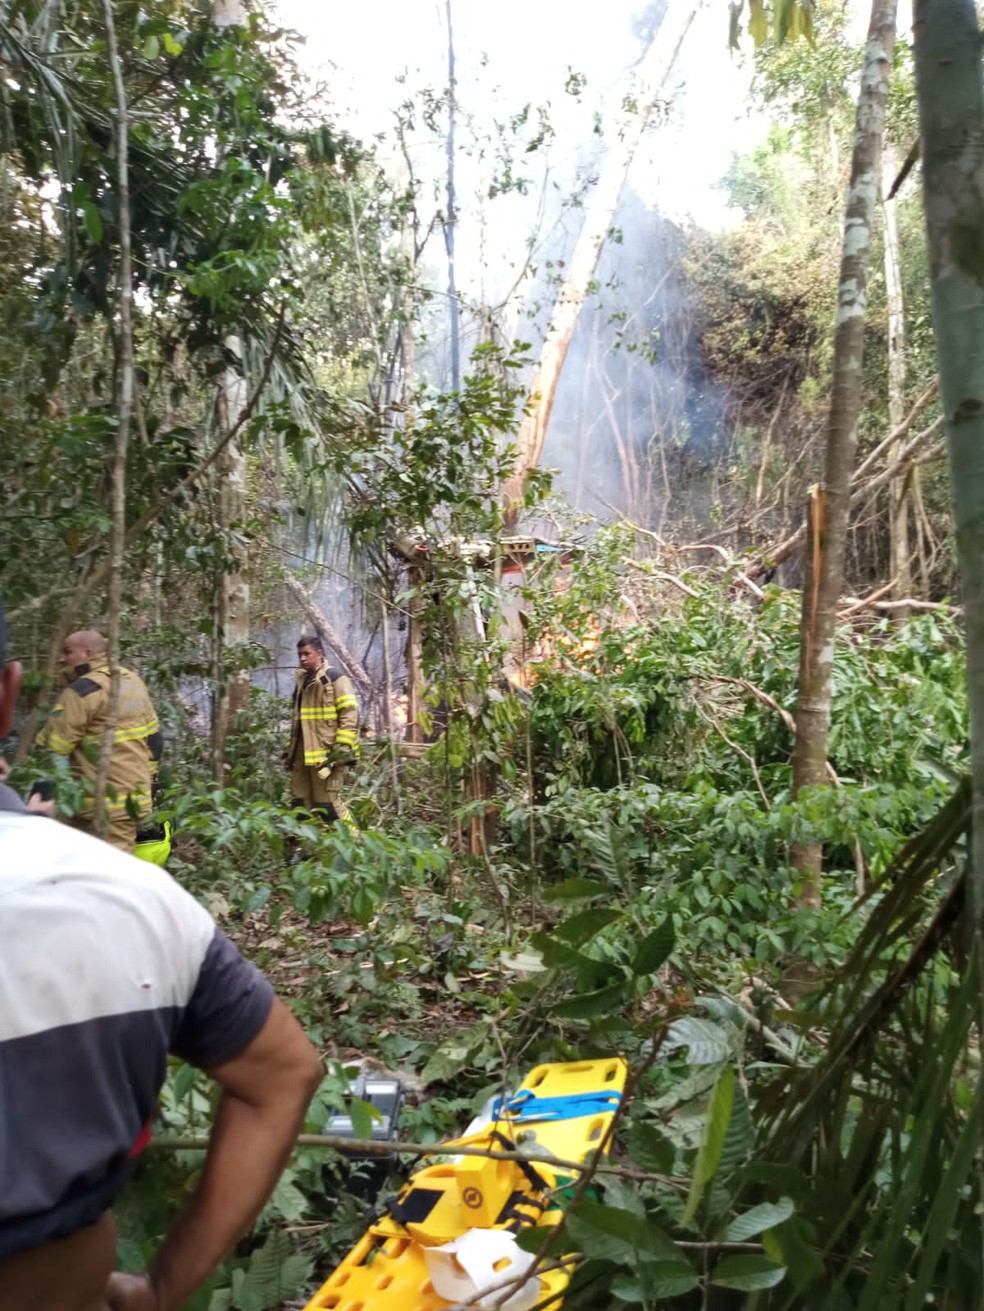 Avião com 12 pessoas cai e explode em Rio Branco, no Acre